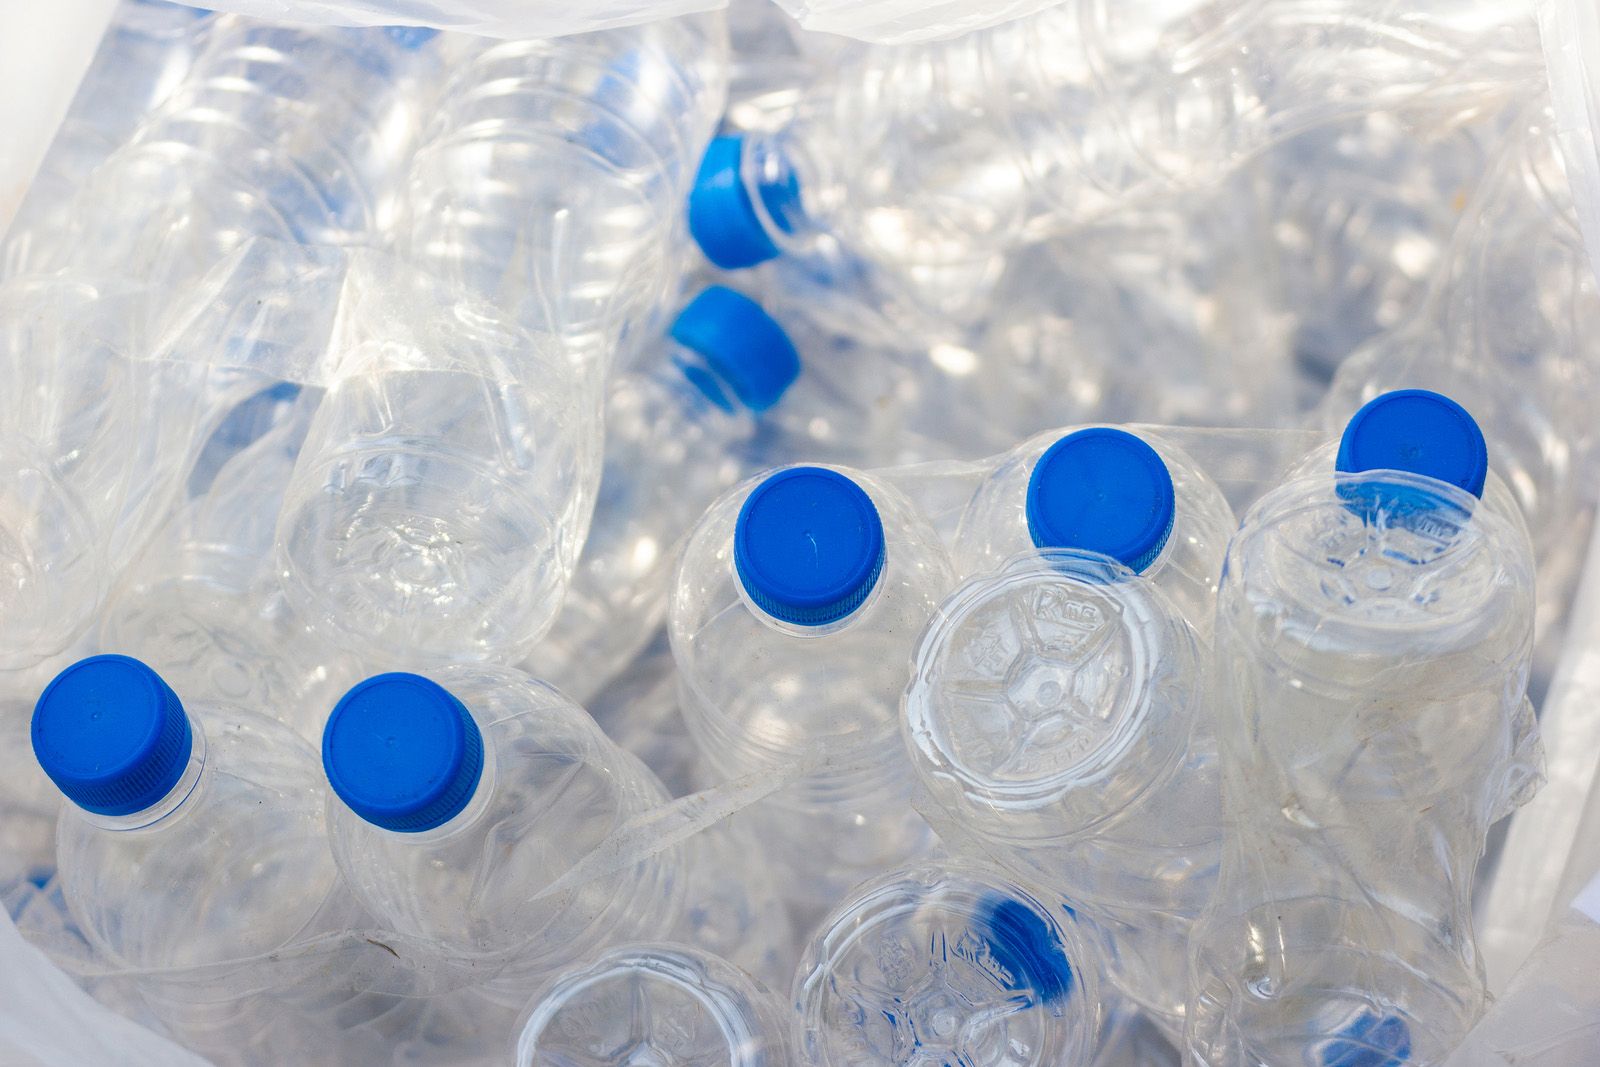 Estas son algunas ideas para reutilizar botellas de plástico